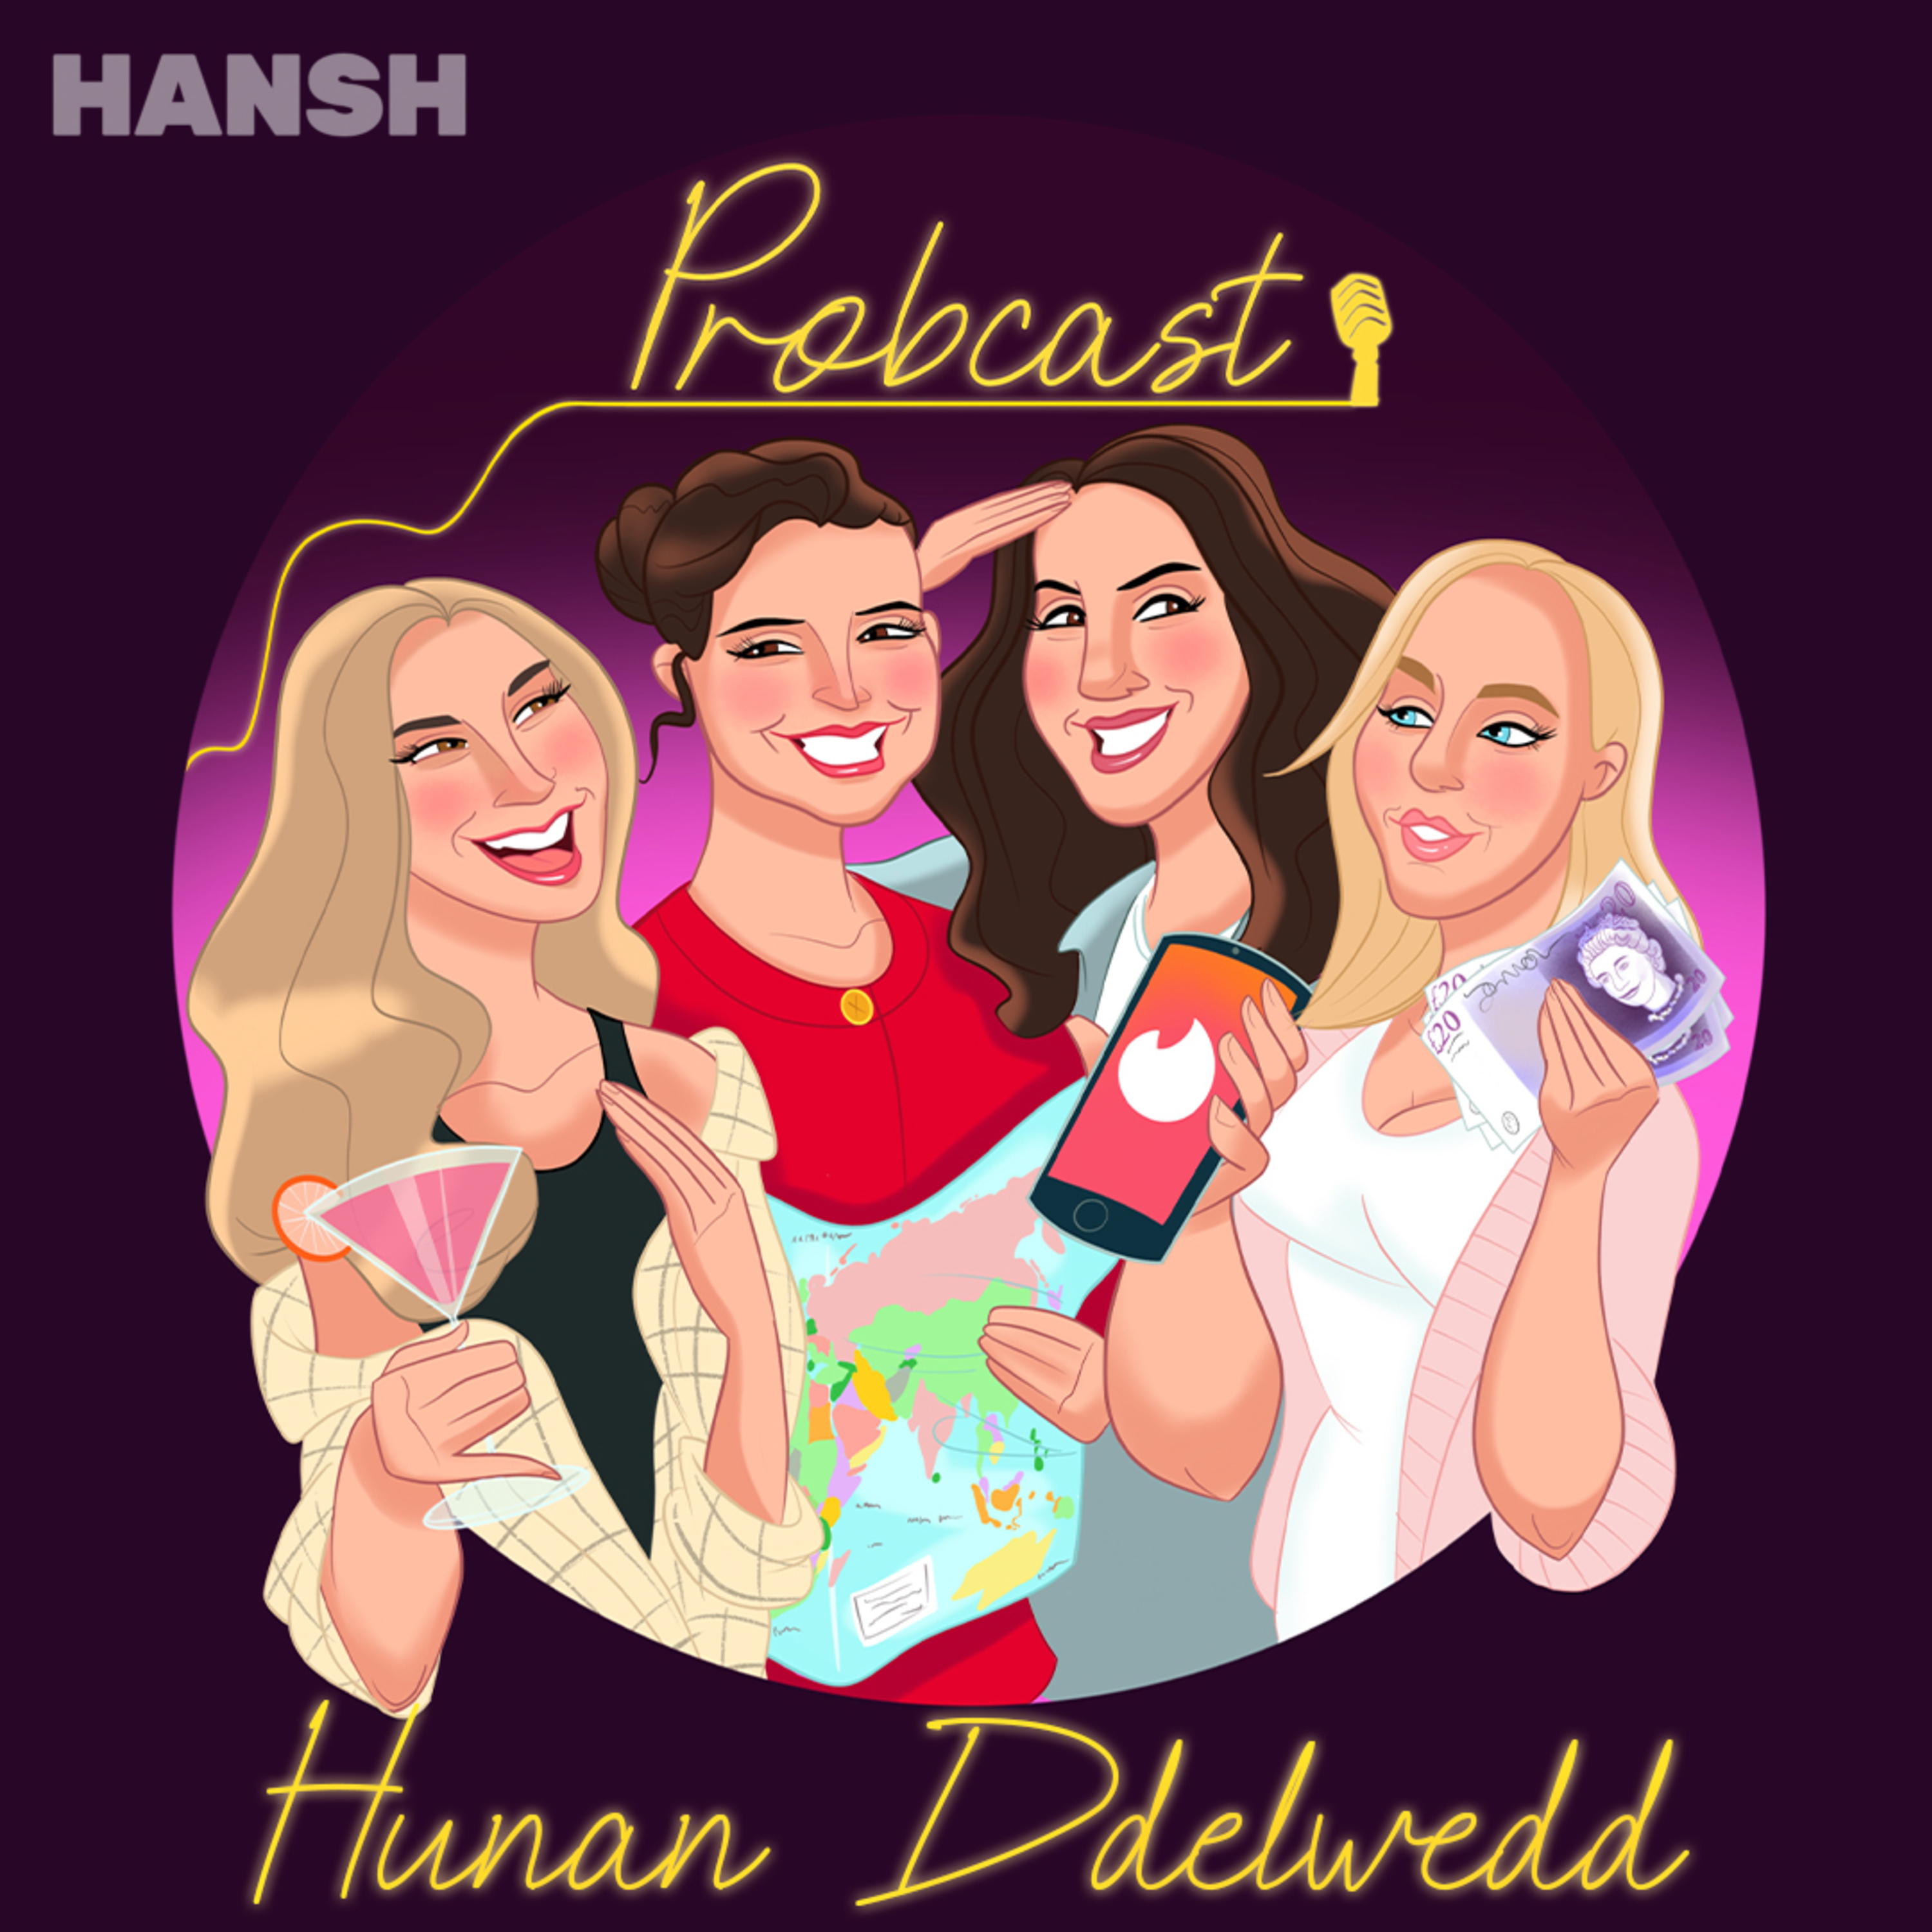 Hansh - PROBCAST - HUNAN DDELWEDD